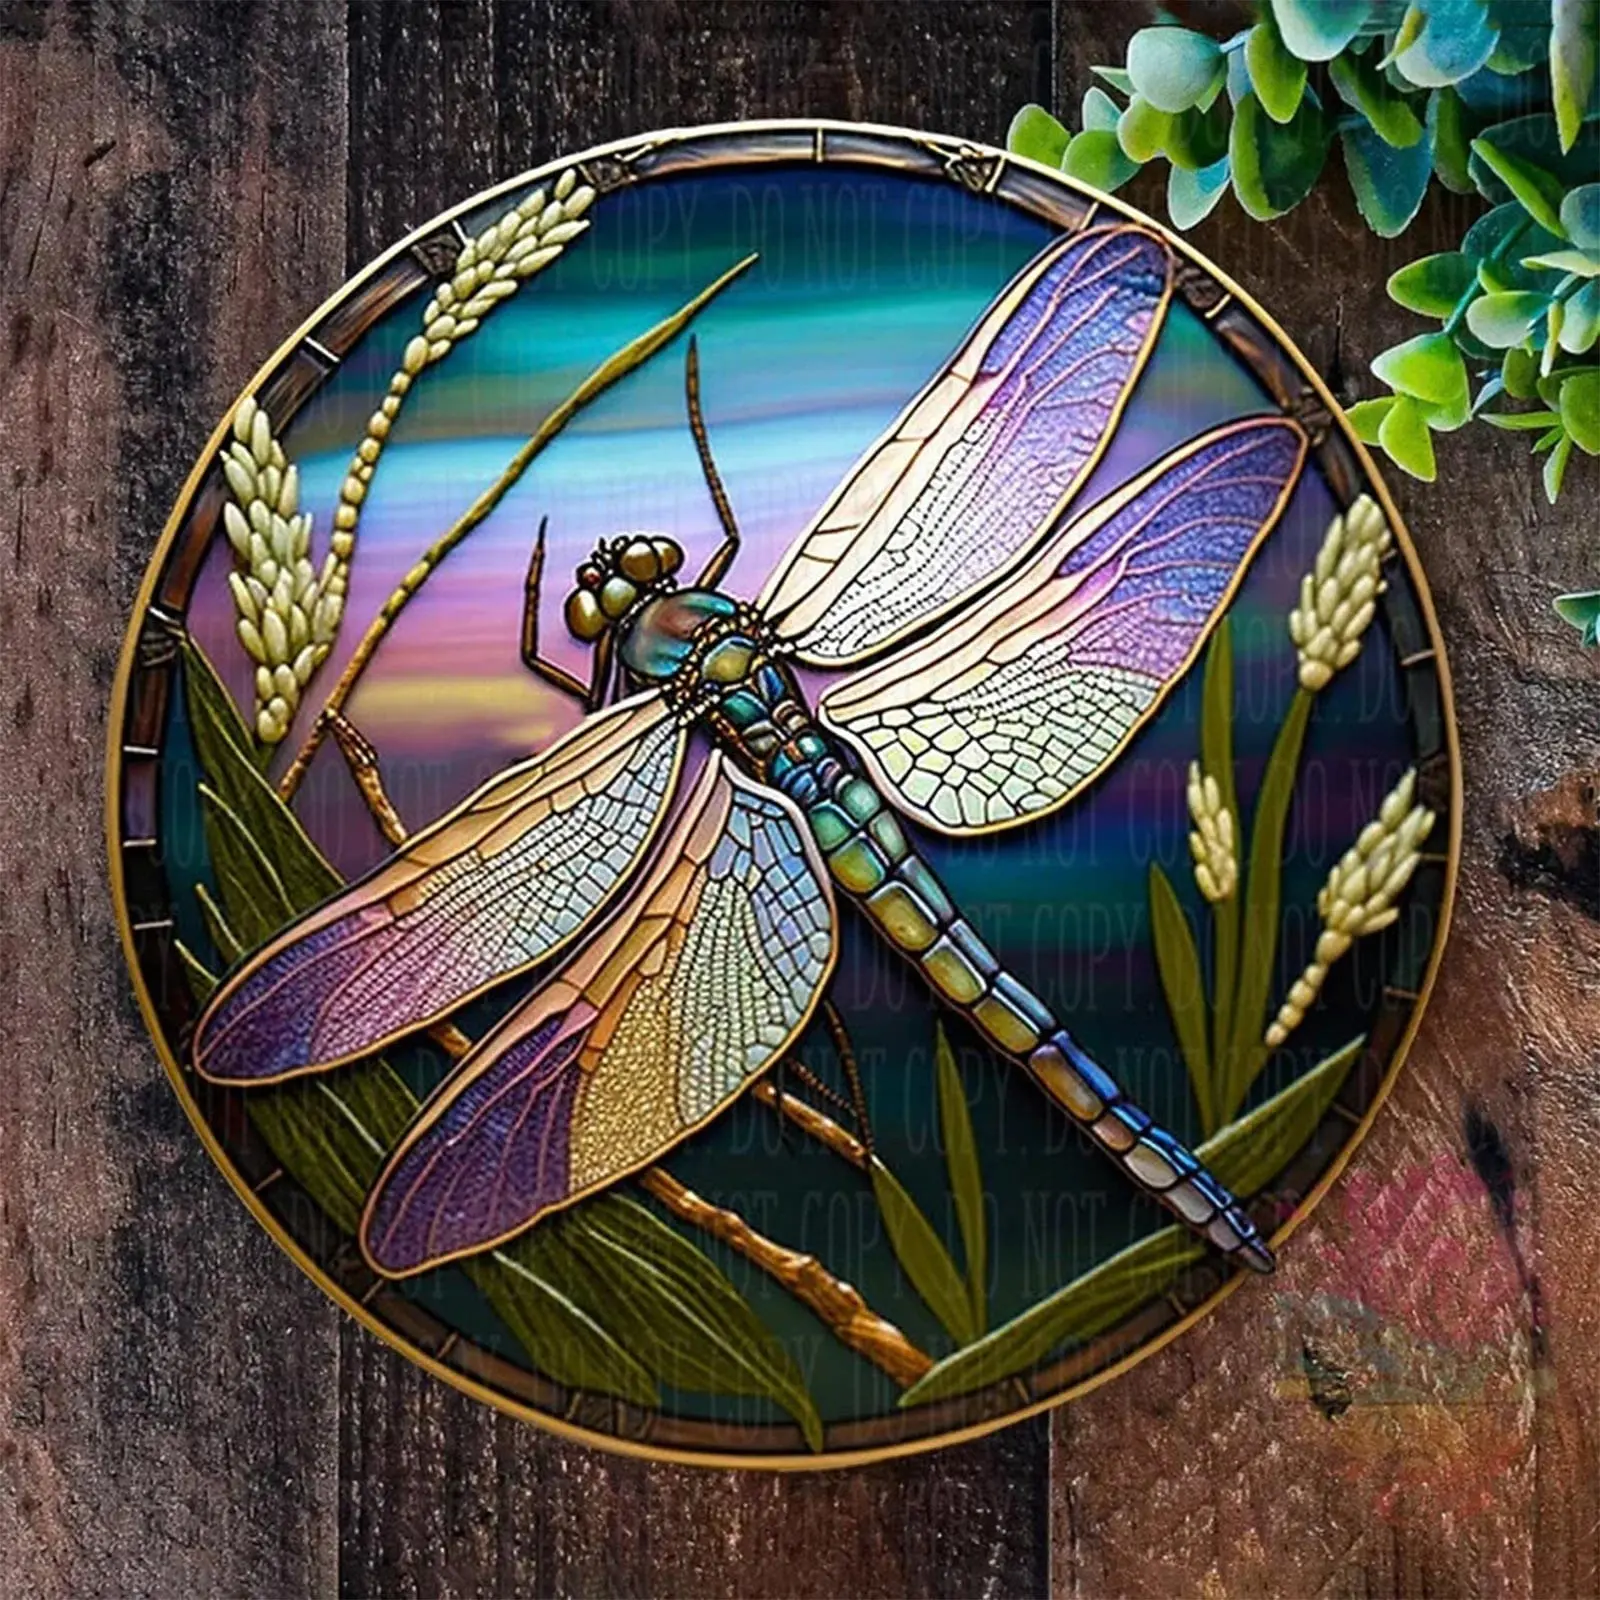 animales pintura realista libelulas con acrilico - Cómo son las alas de una libélula